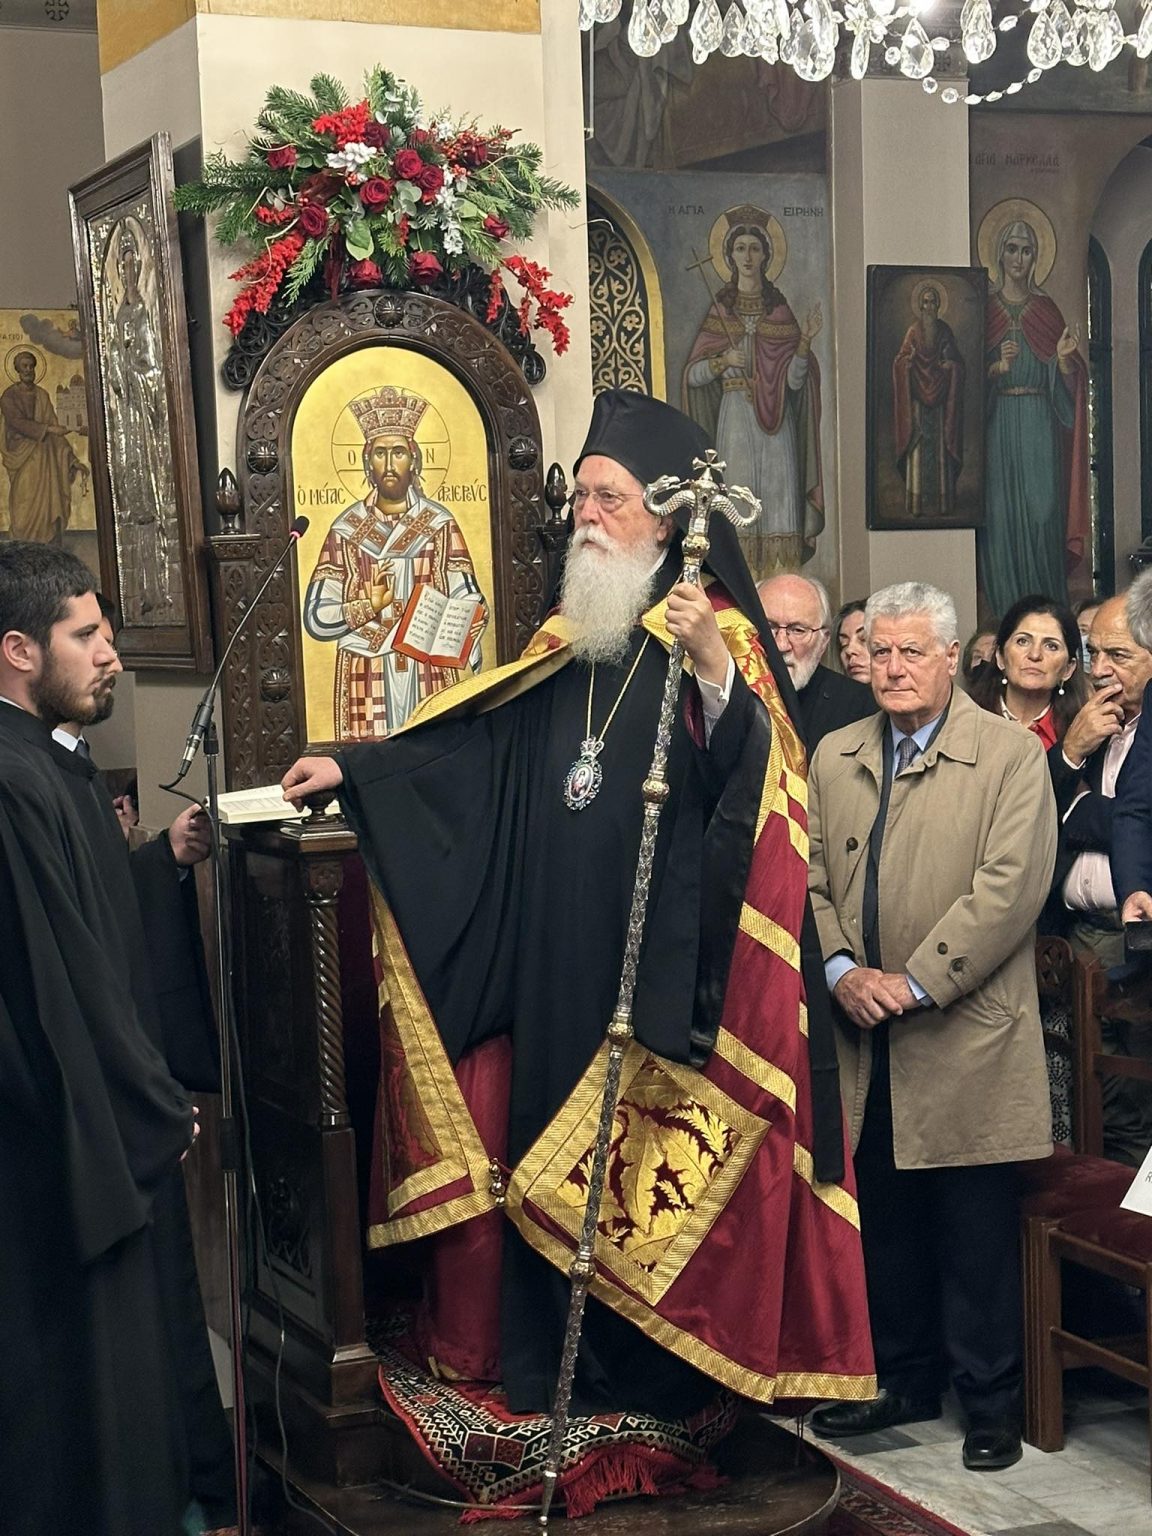 Η πανήγυρις του I.Ναού του Οικουμενικού Πατριαρχείου στην Αθήνα